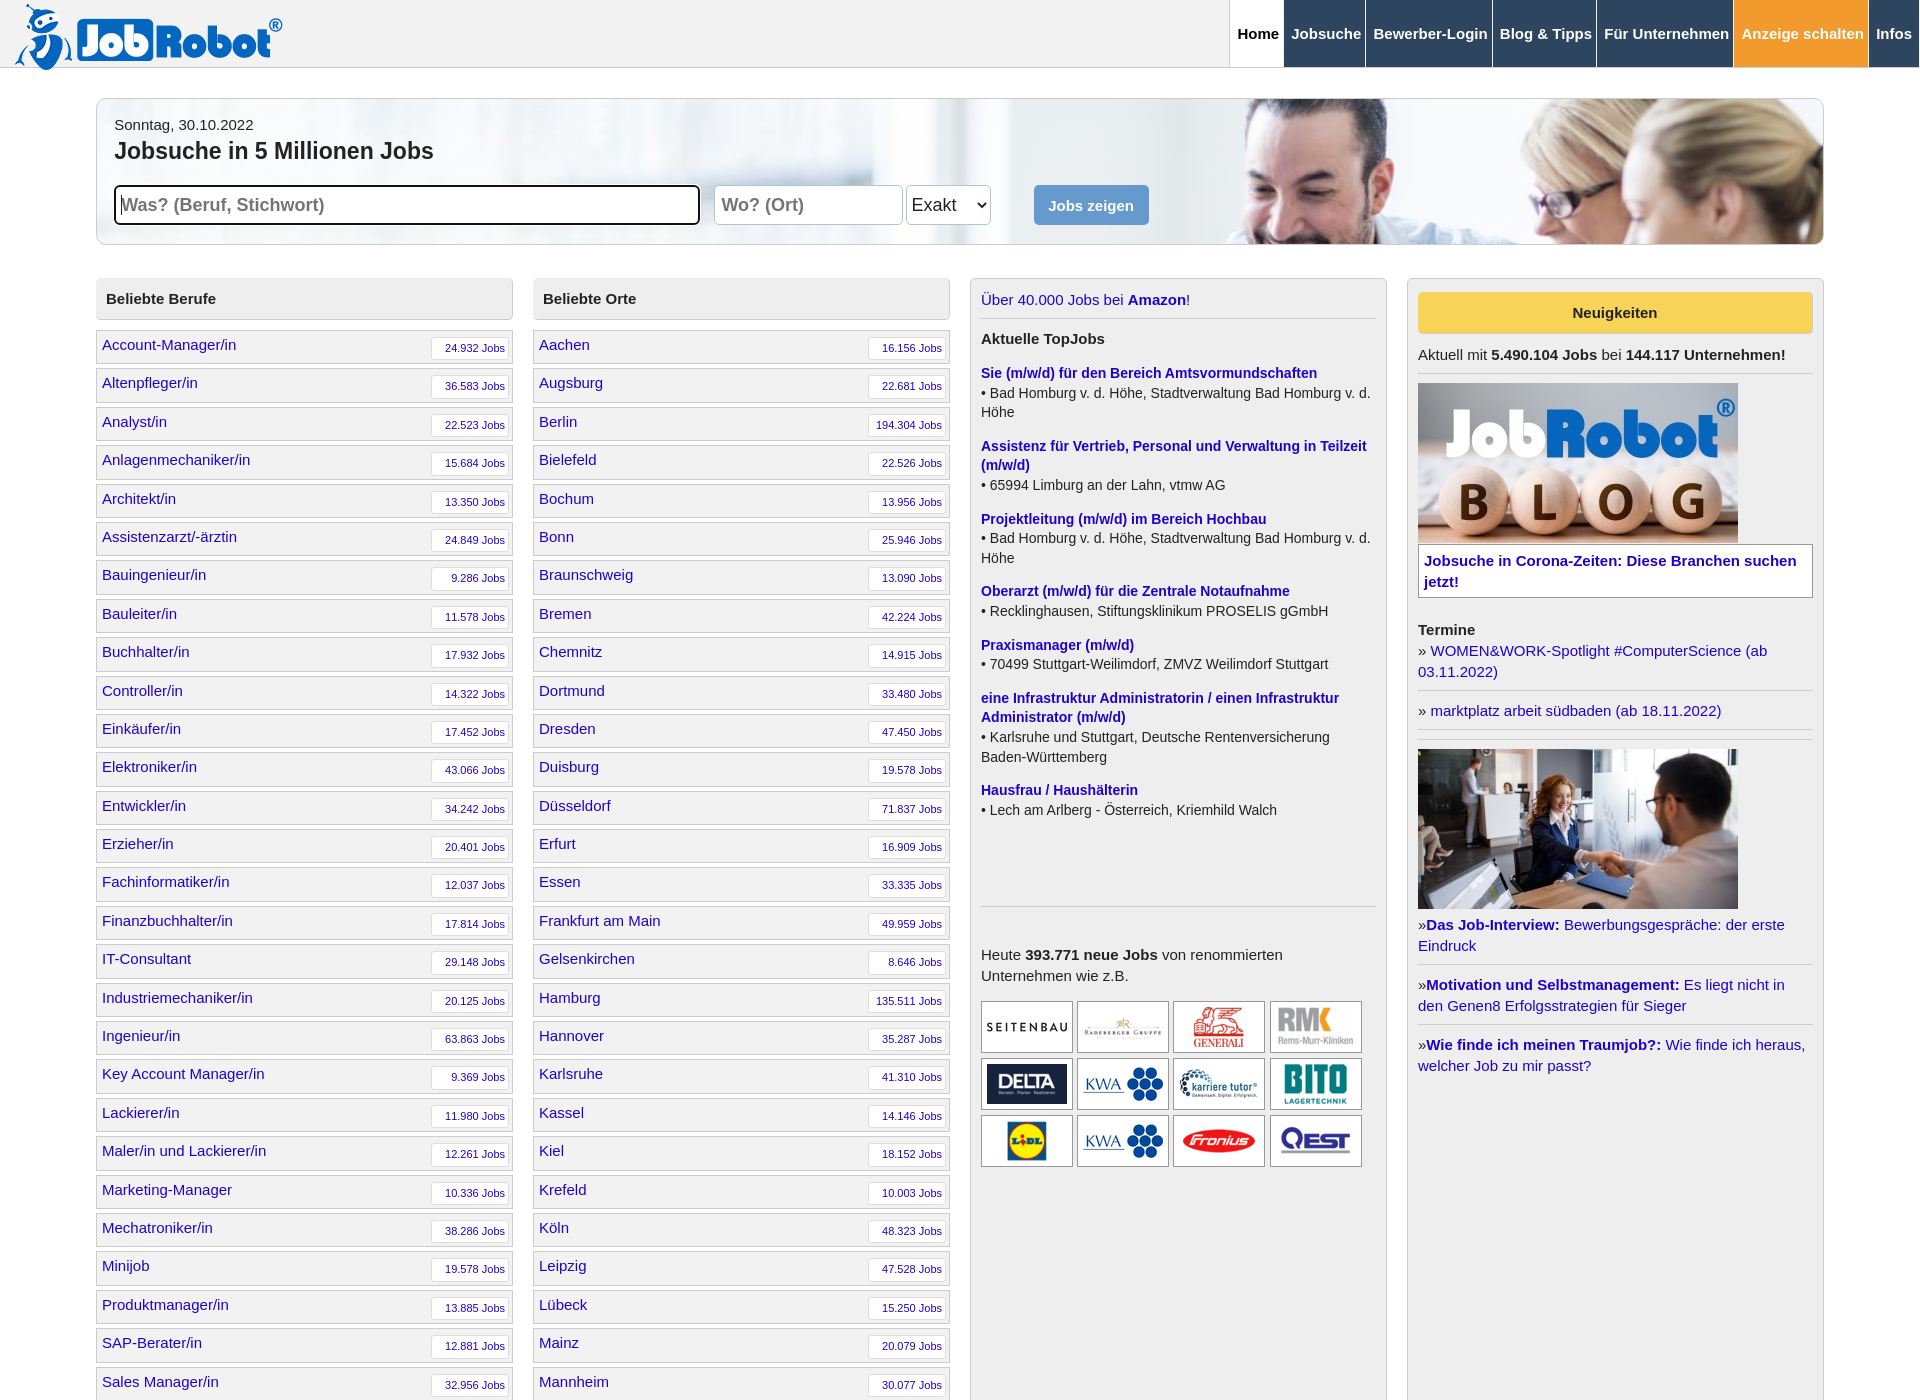 Screenshot for job-robot.fi